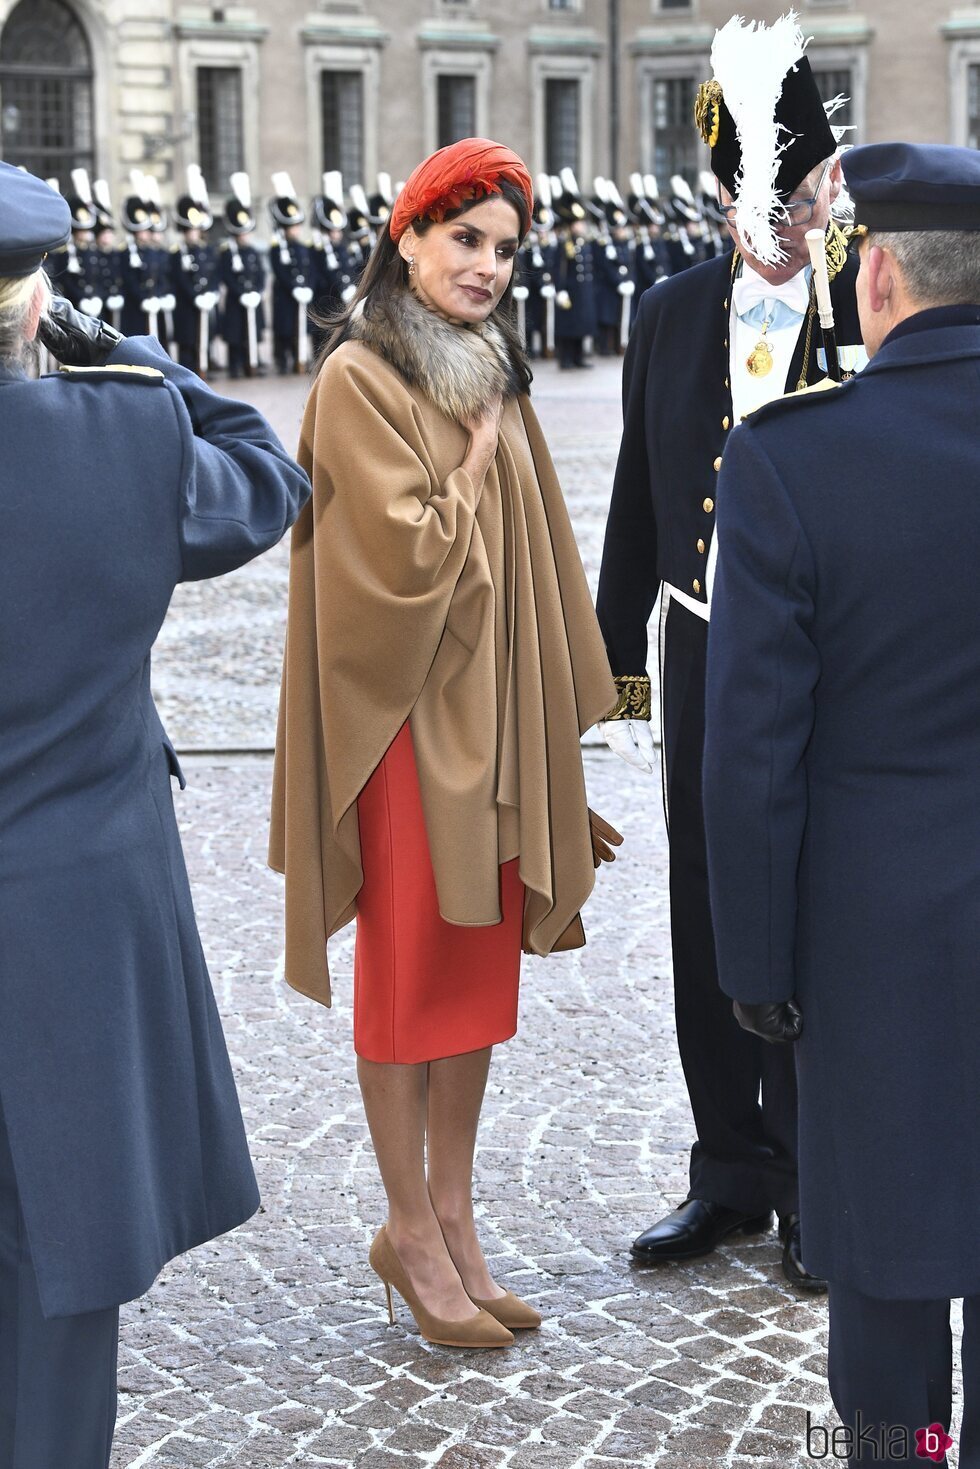 La Reina Letizia en el Palacio Real de Estocolmo en la Visita de Estado de los Reyes de España a Suecia